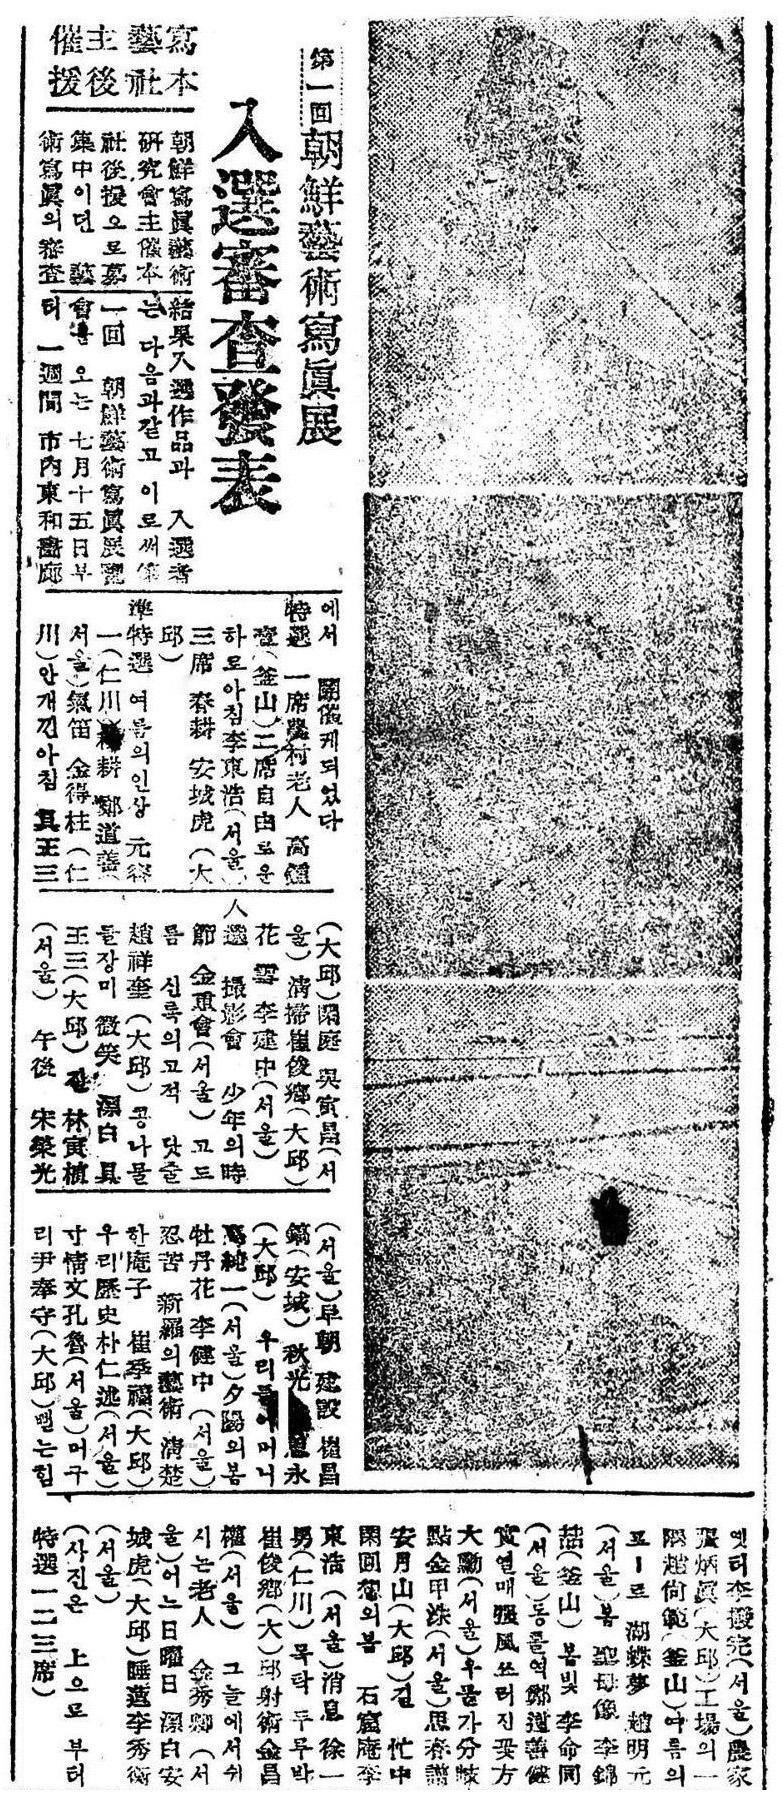 대한사진예술가협회 관련 참고 자료 예술사진전, 동아일보,1946년